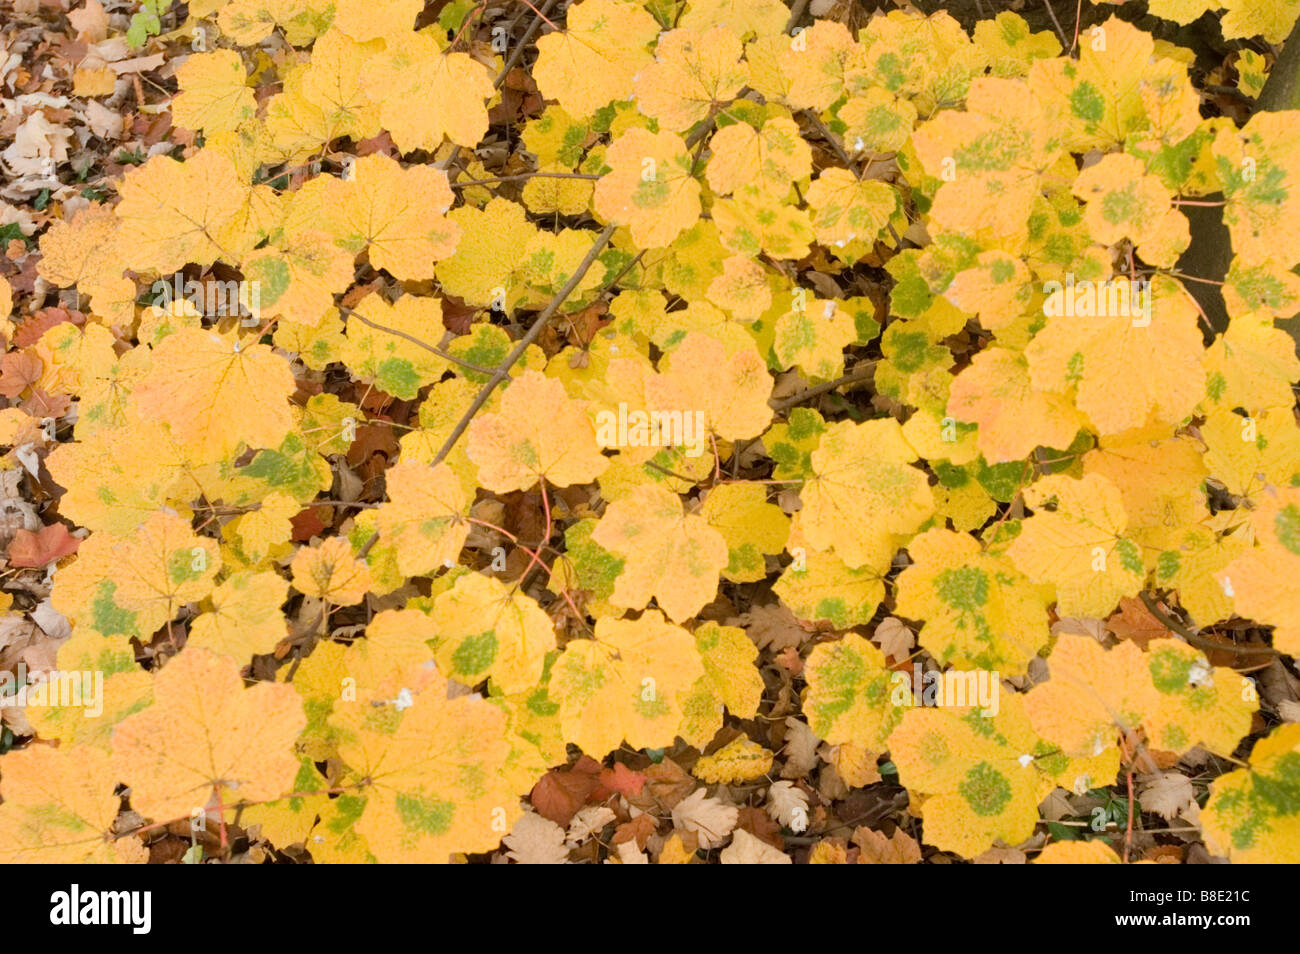 Yellow autumn leaves of Italian maple, Aceraceae, Acer opalus subsp. Obtusatum Stock Photo